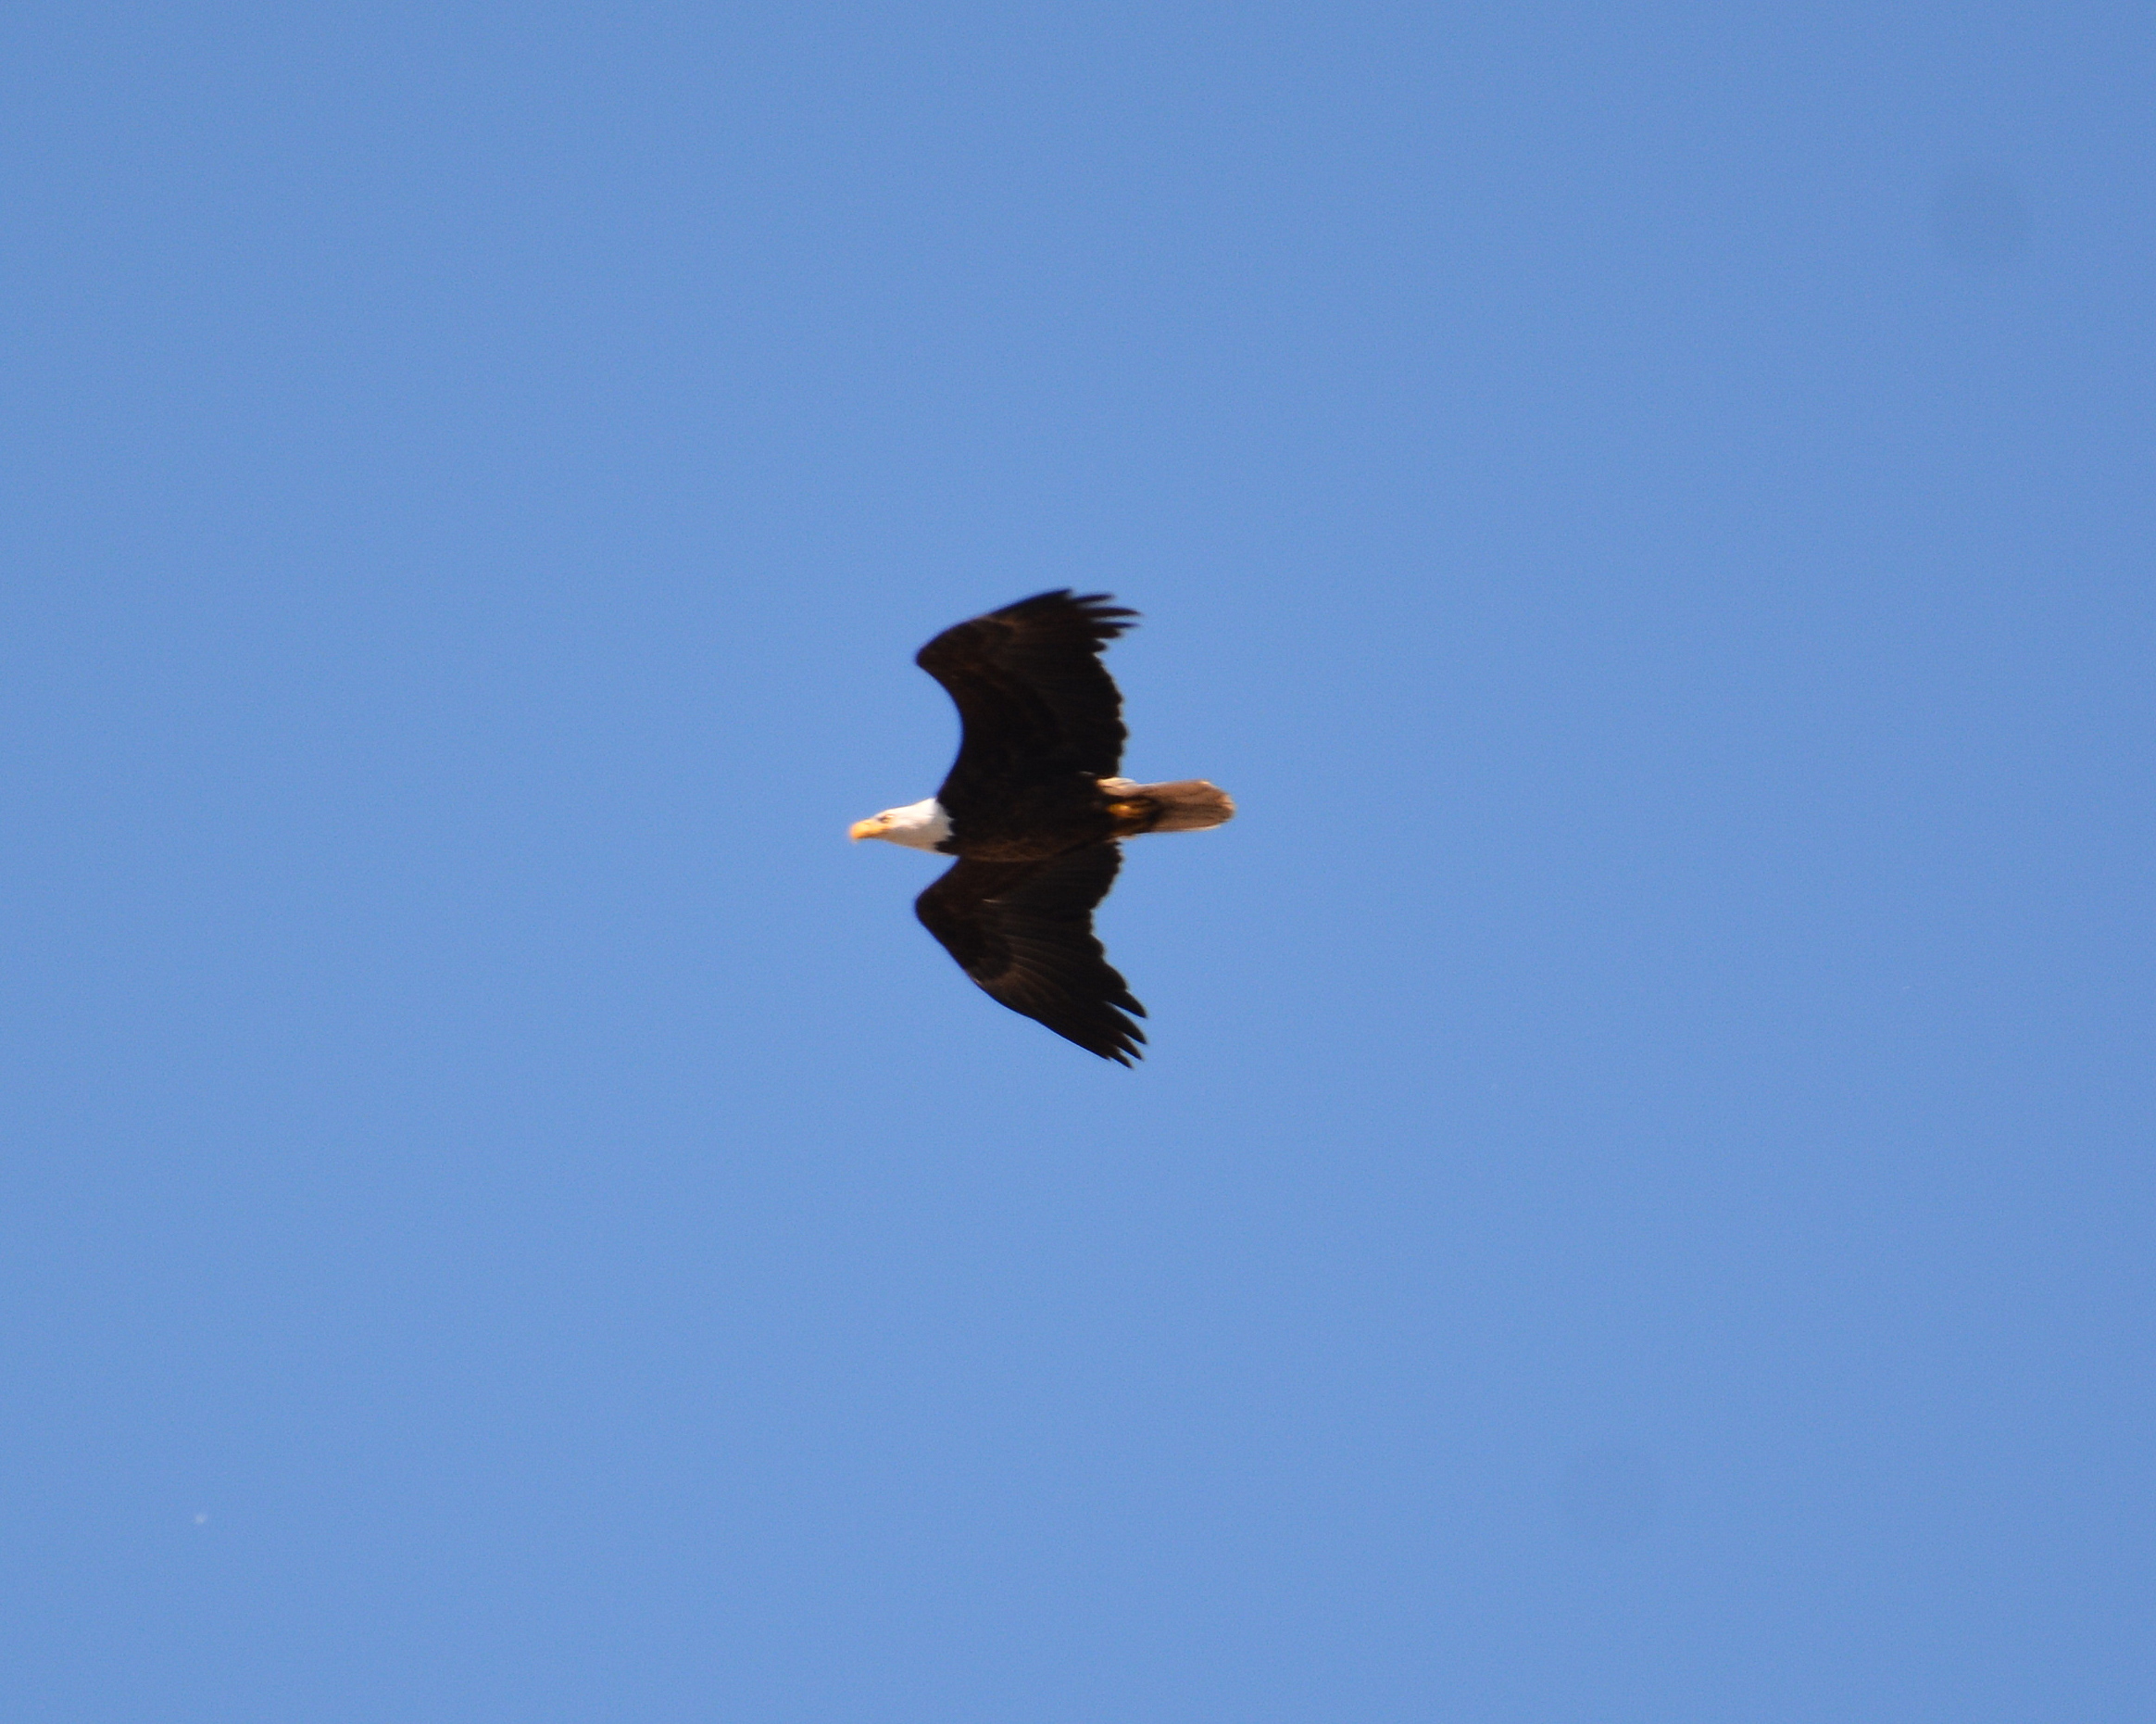 A Bald Eagle passes through the canyon